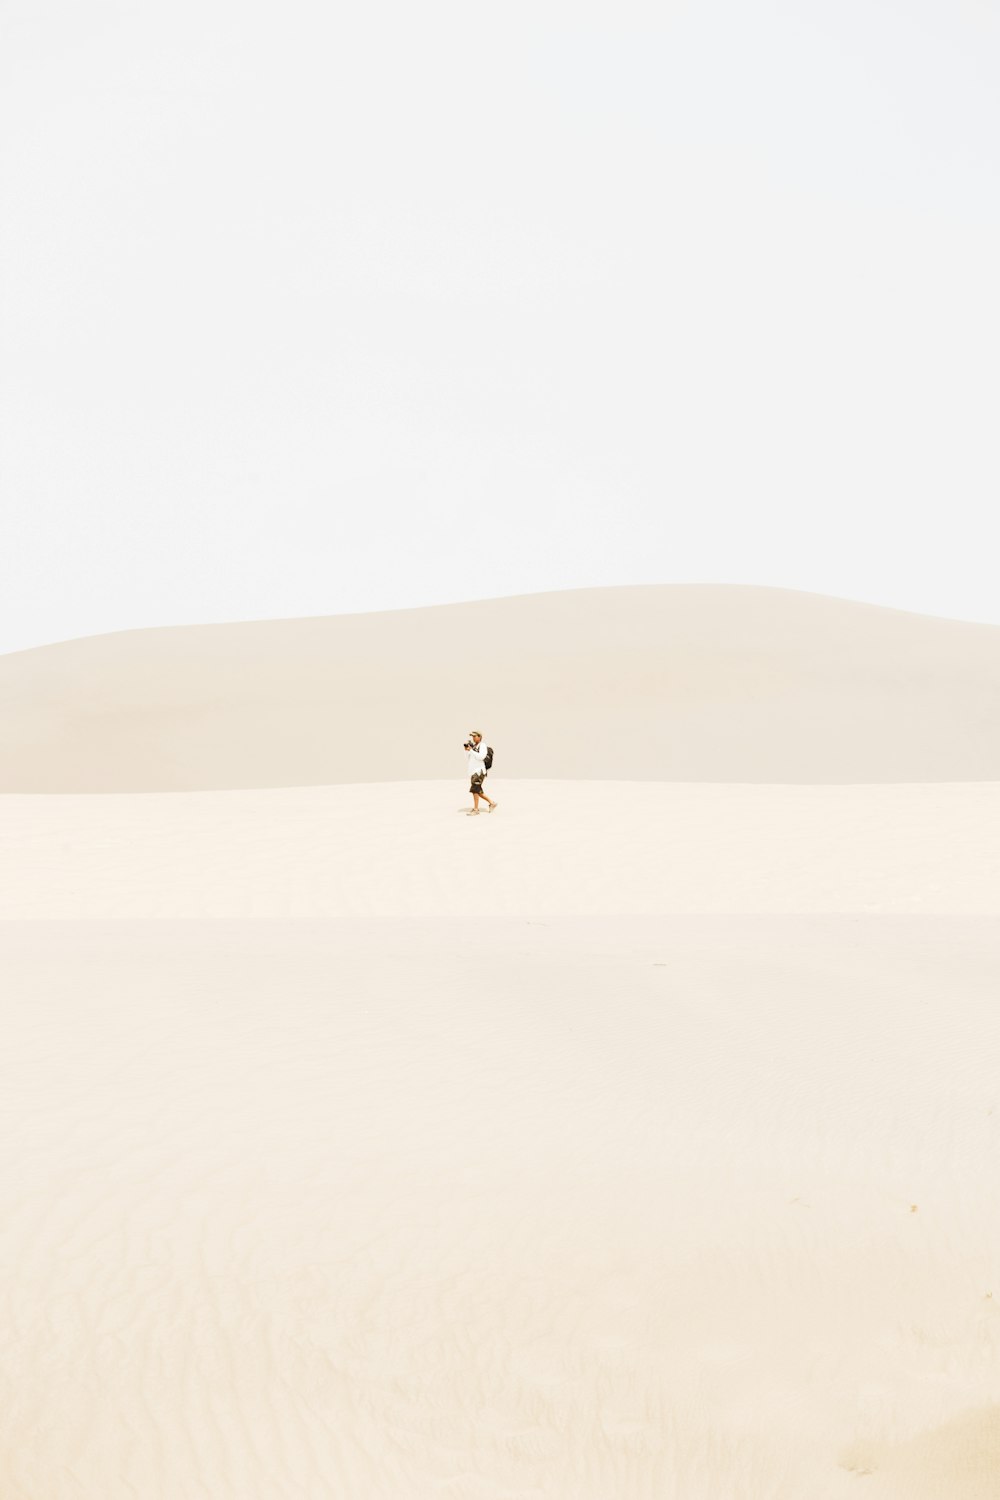 pessoa no meio do deserto durante o dia